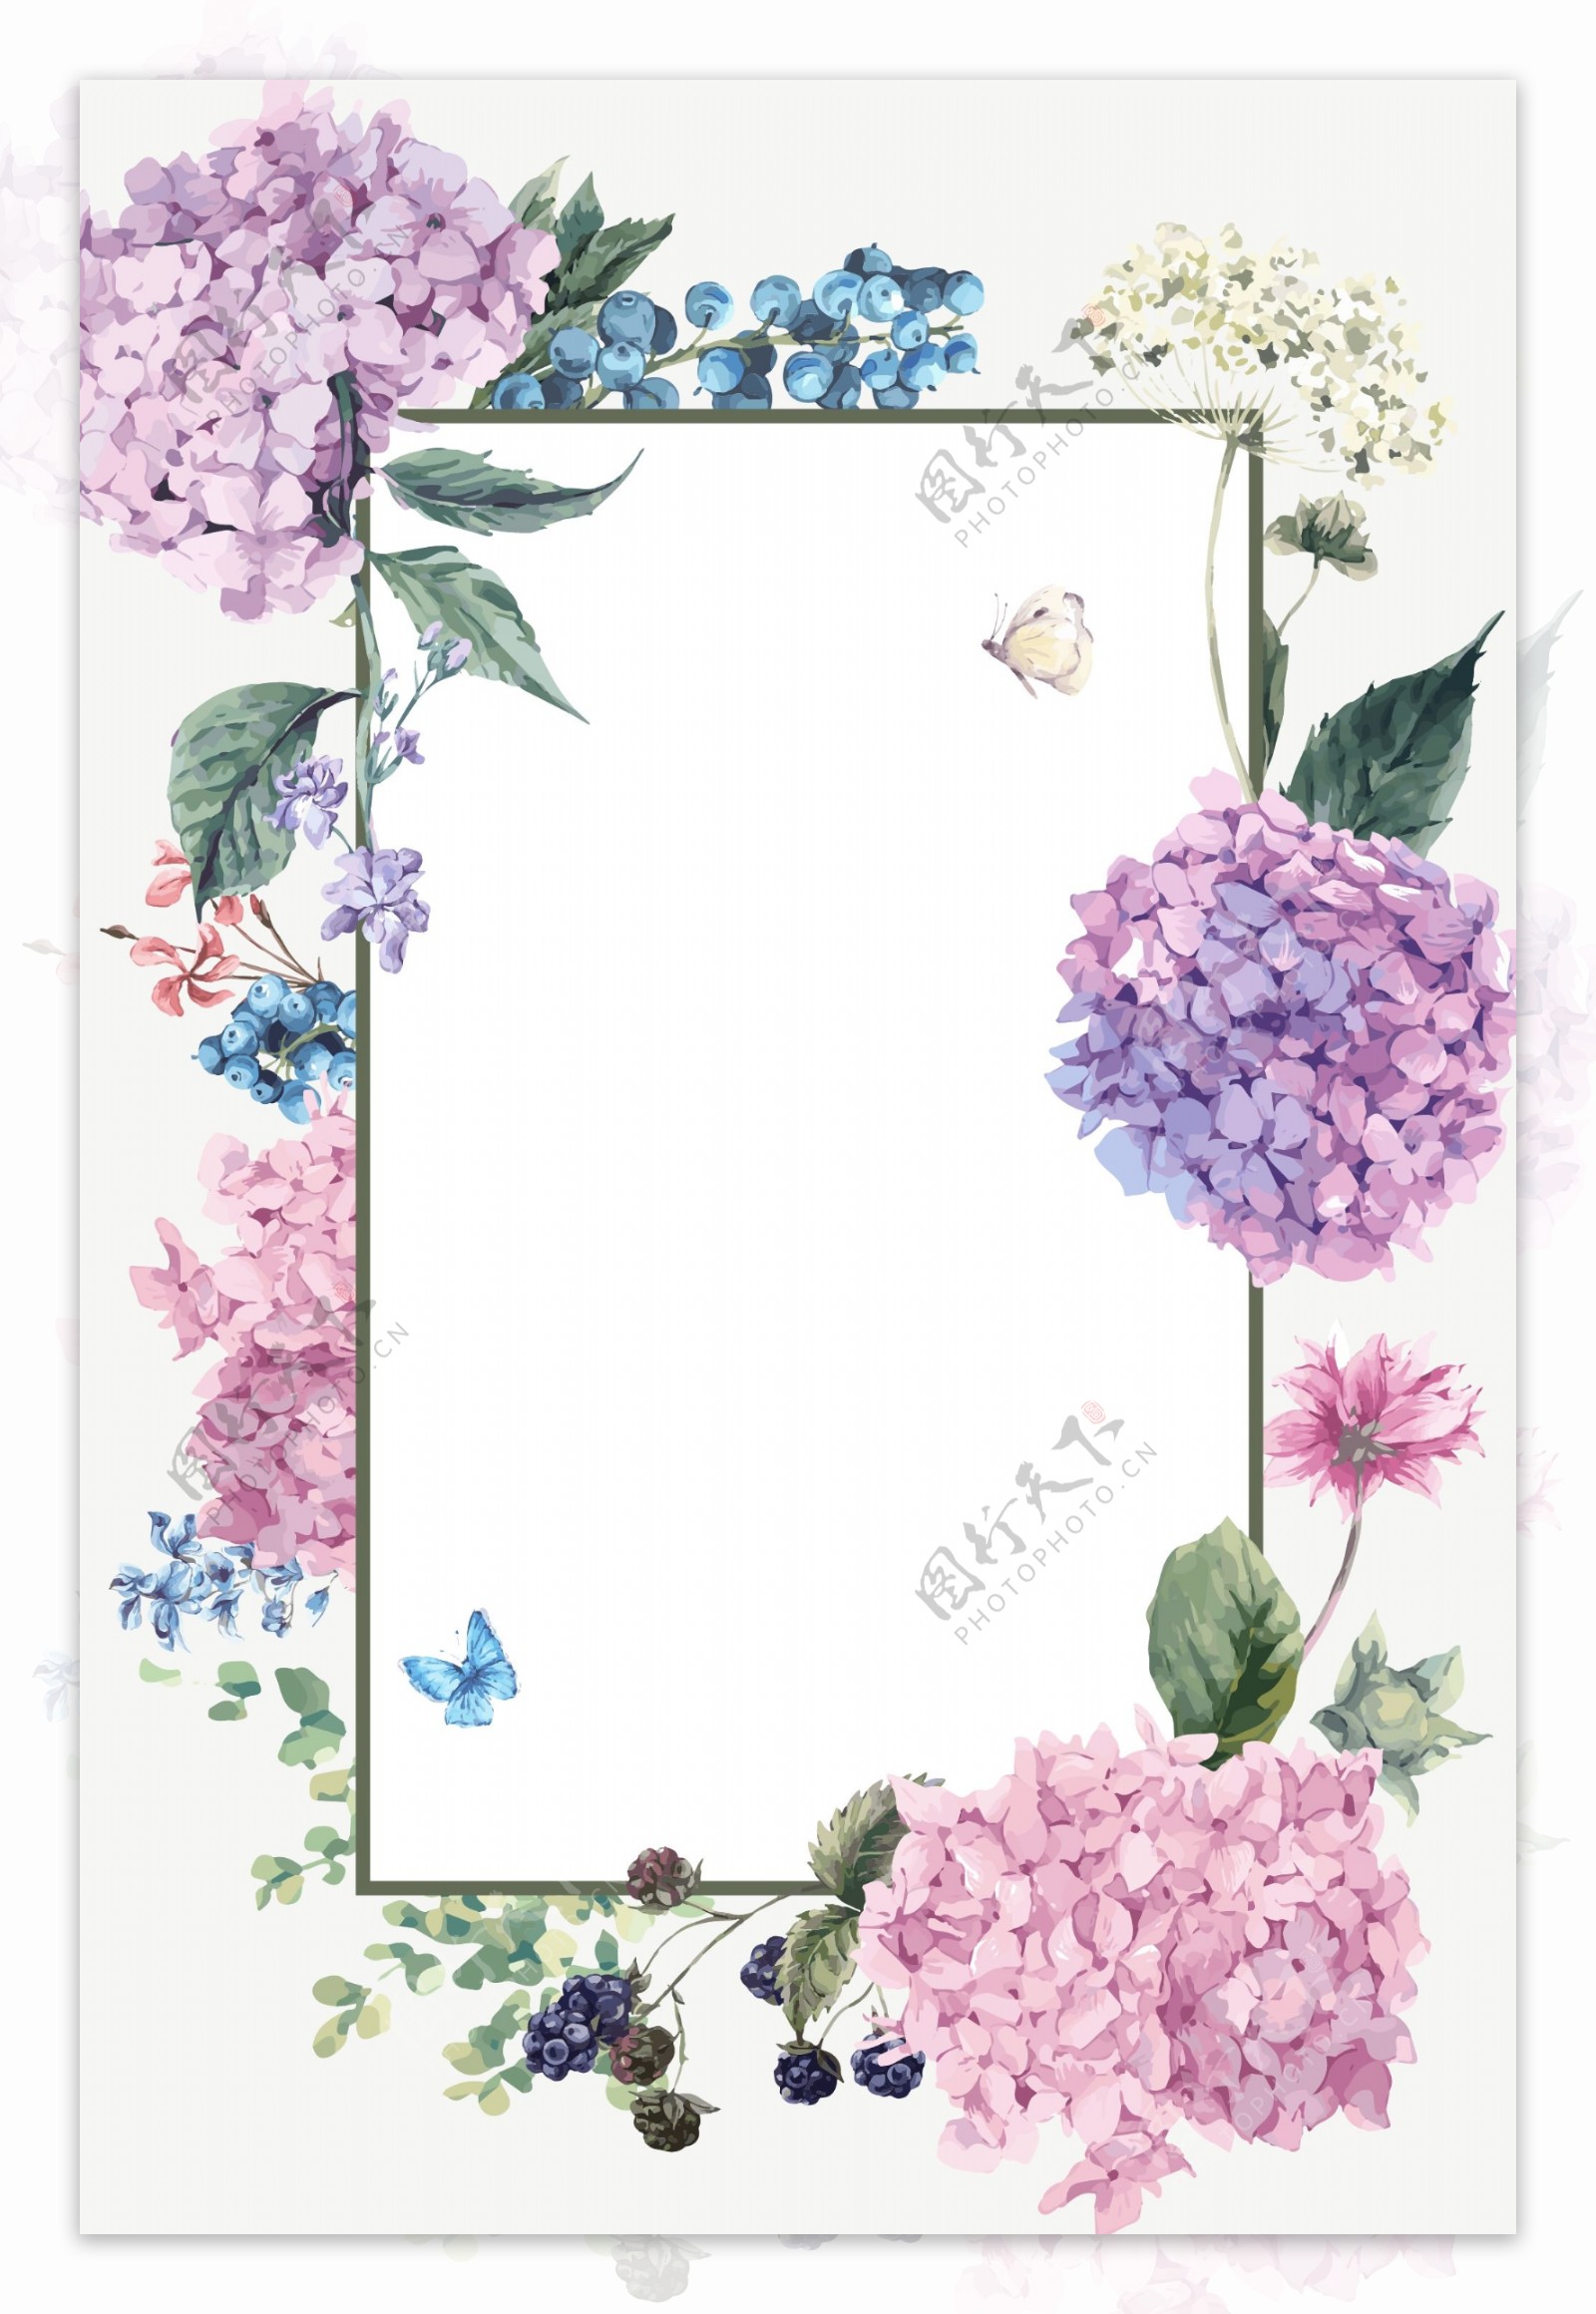 粉紫绣球花卉边框礼物卡信纸